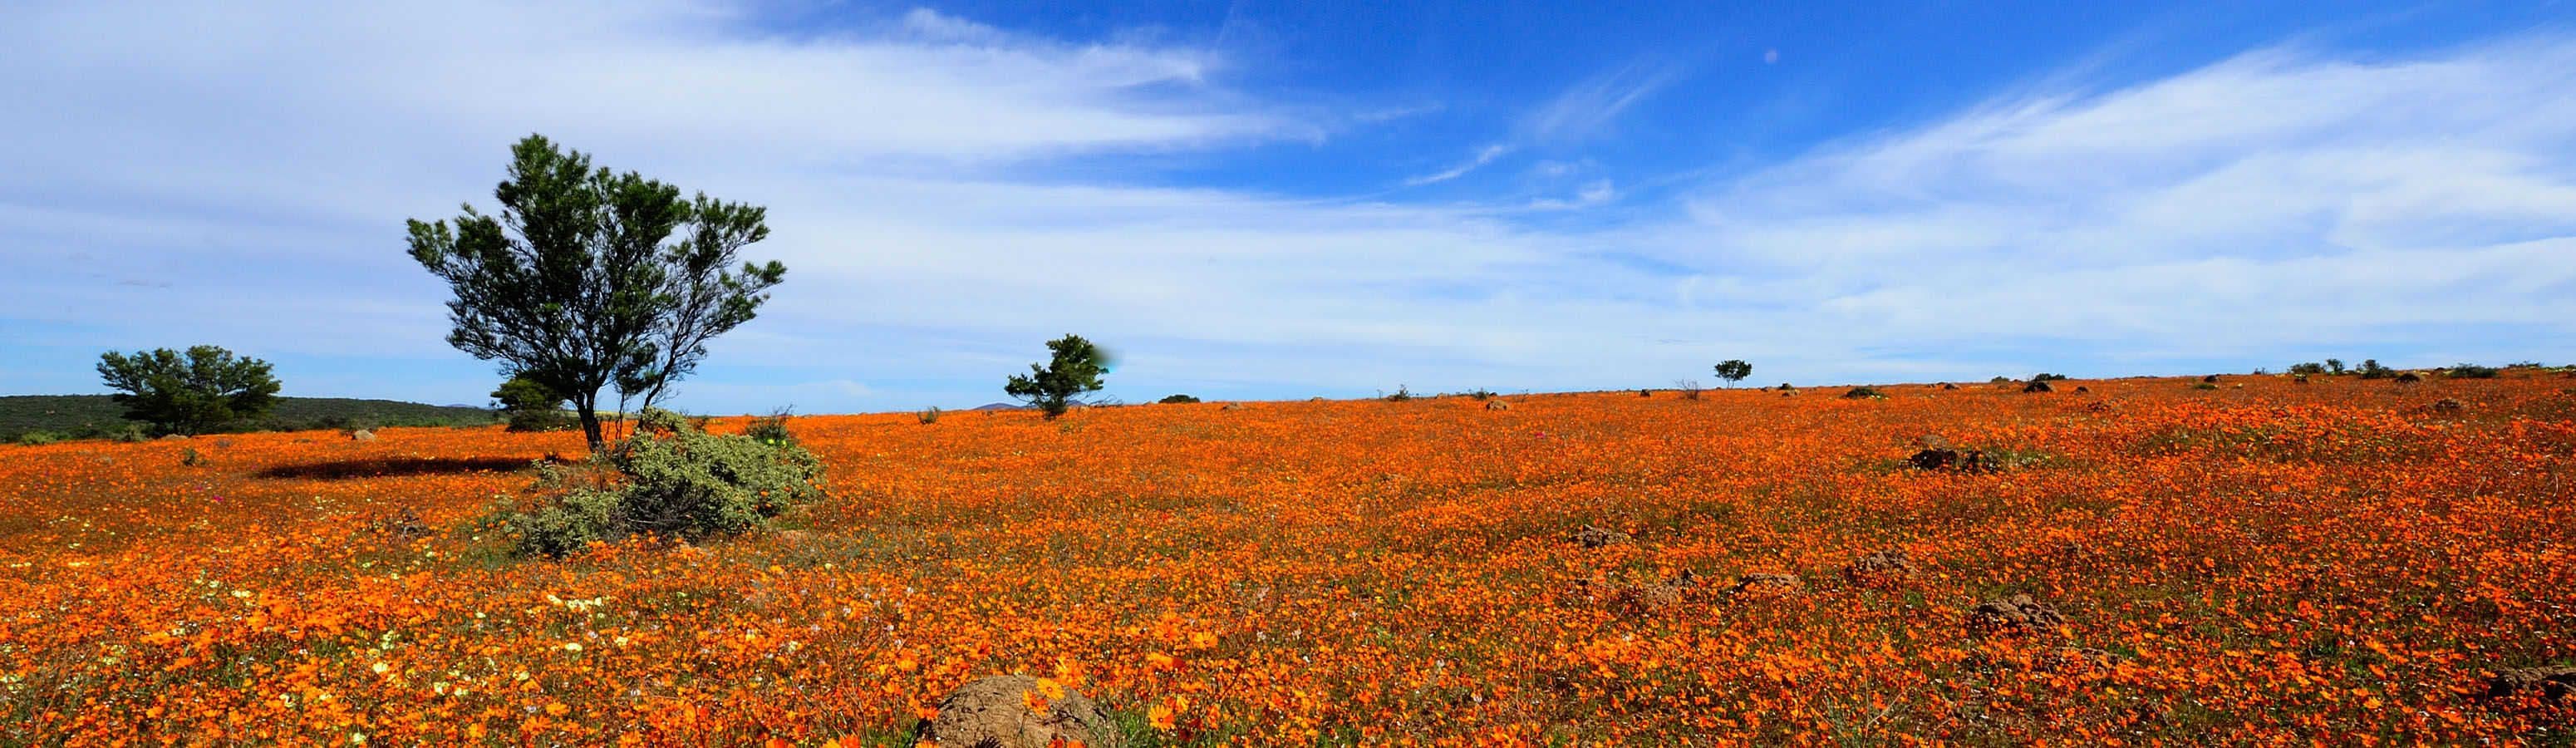 Namaqualand è un bellissimo deserto fiorito